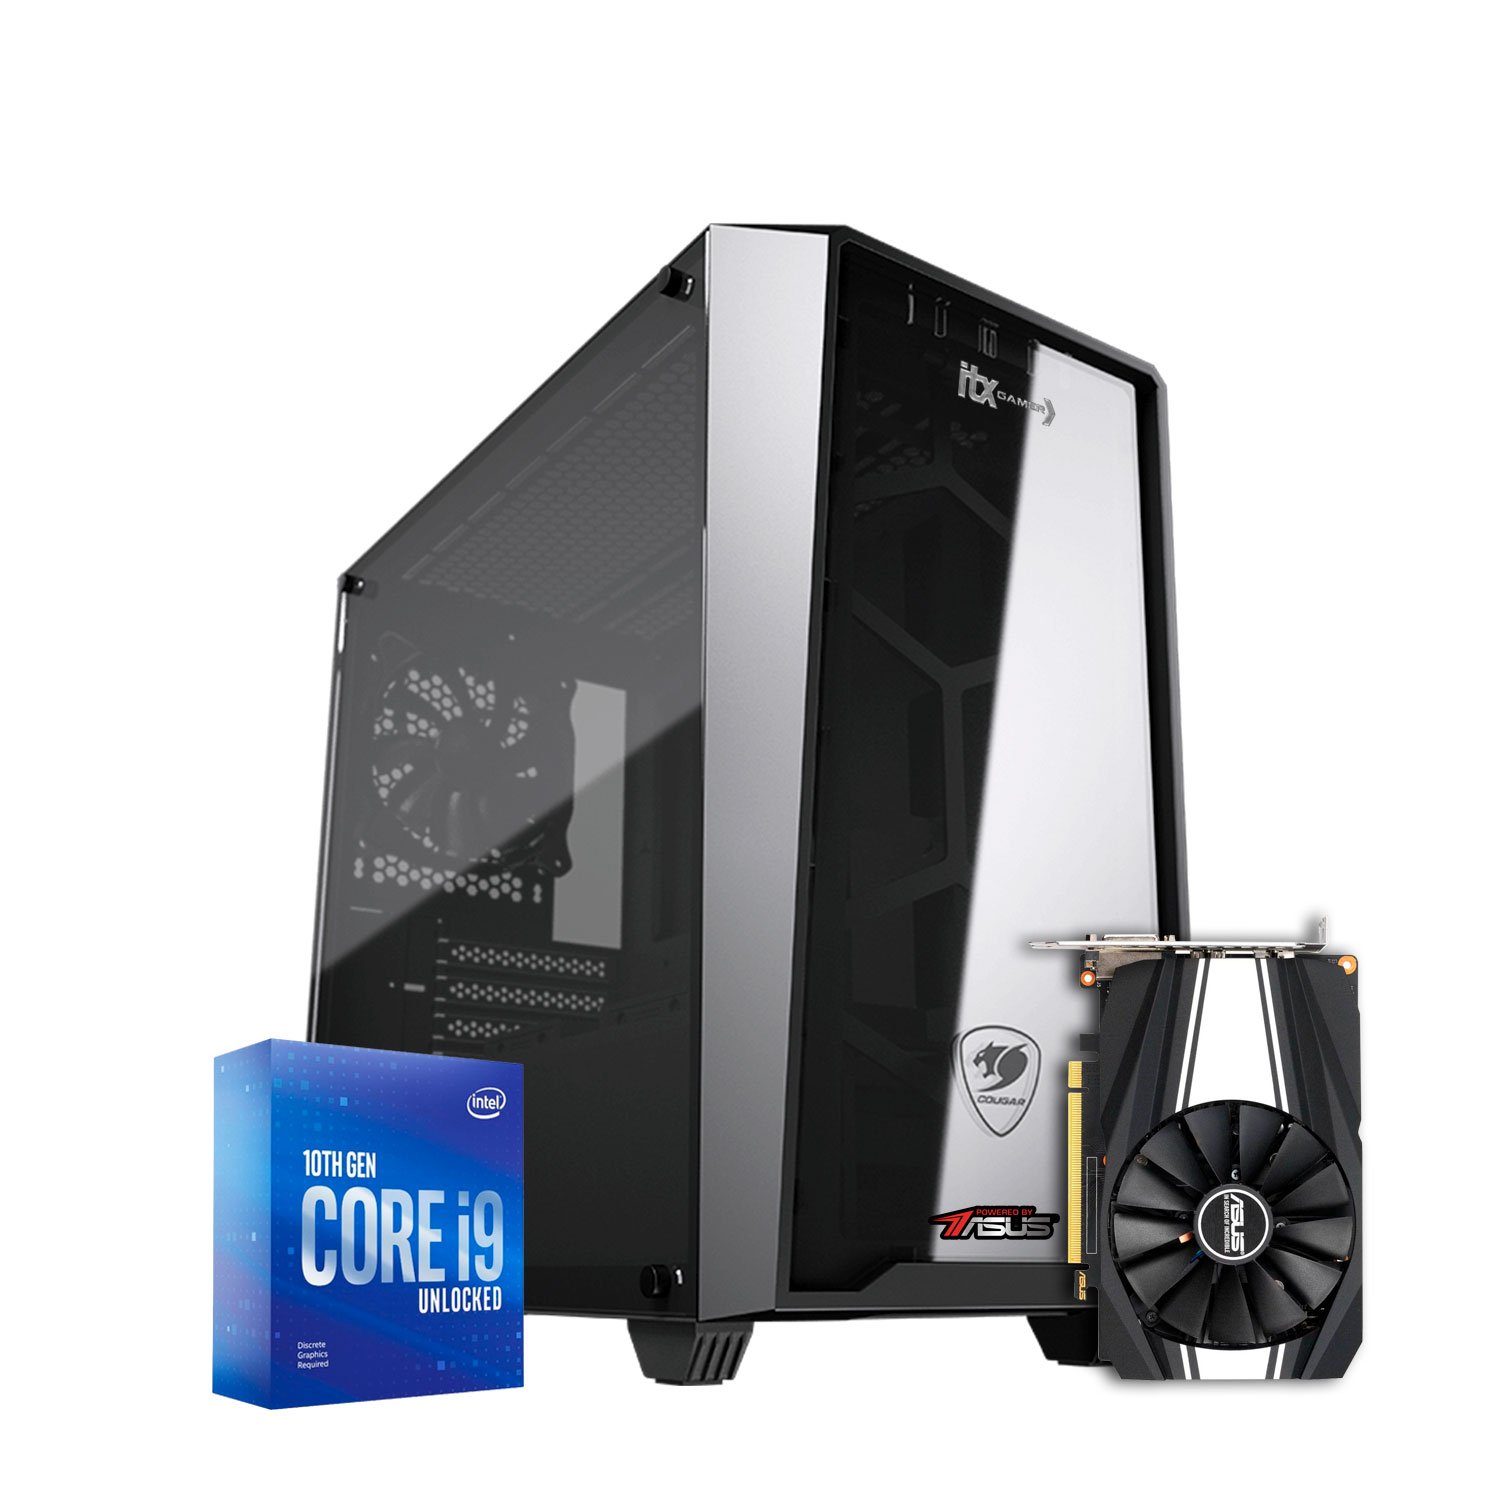 PC Gamer Intel Core i5 10400F - GTX 1650 - 16Gb Ram - SSD 480Gb - PC Gamer  com o melhor preço é na Coimbra Virtual